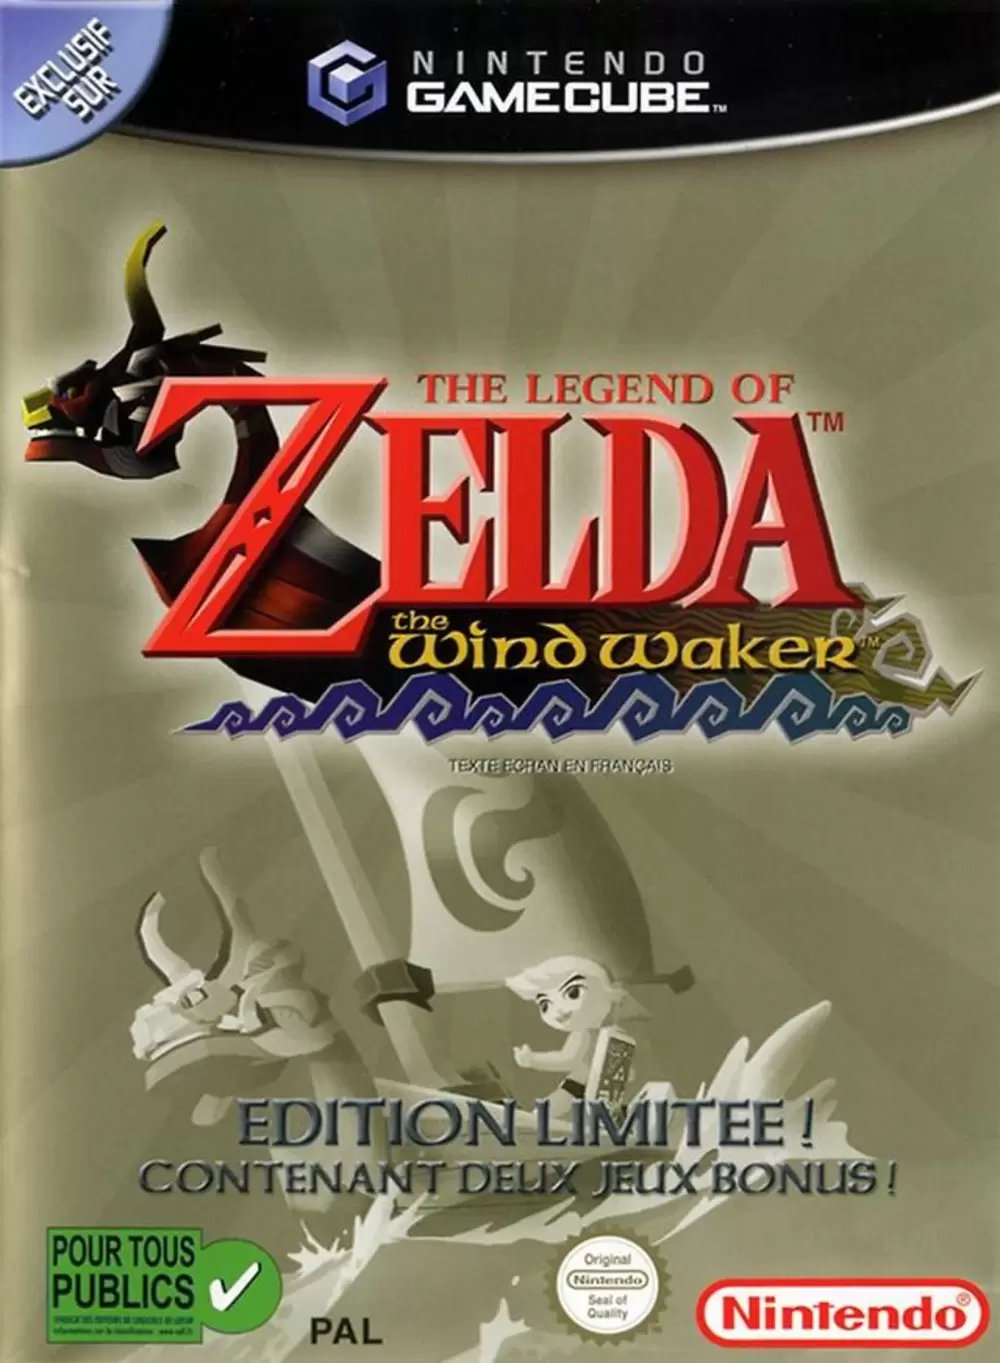 Nintendo Gamecube Games - The Legend of Zelda: The Wind Waker